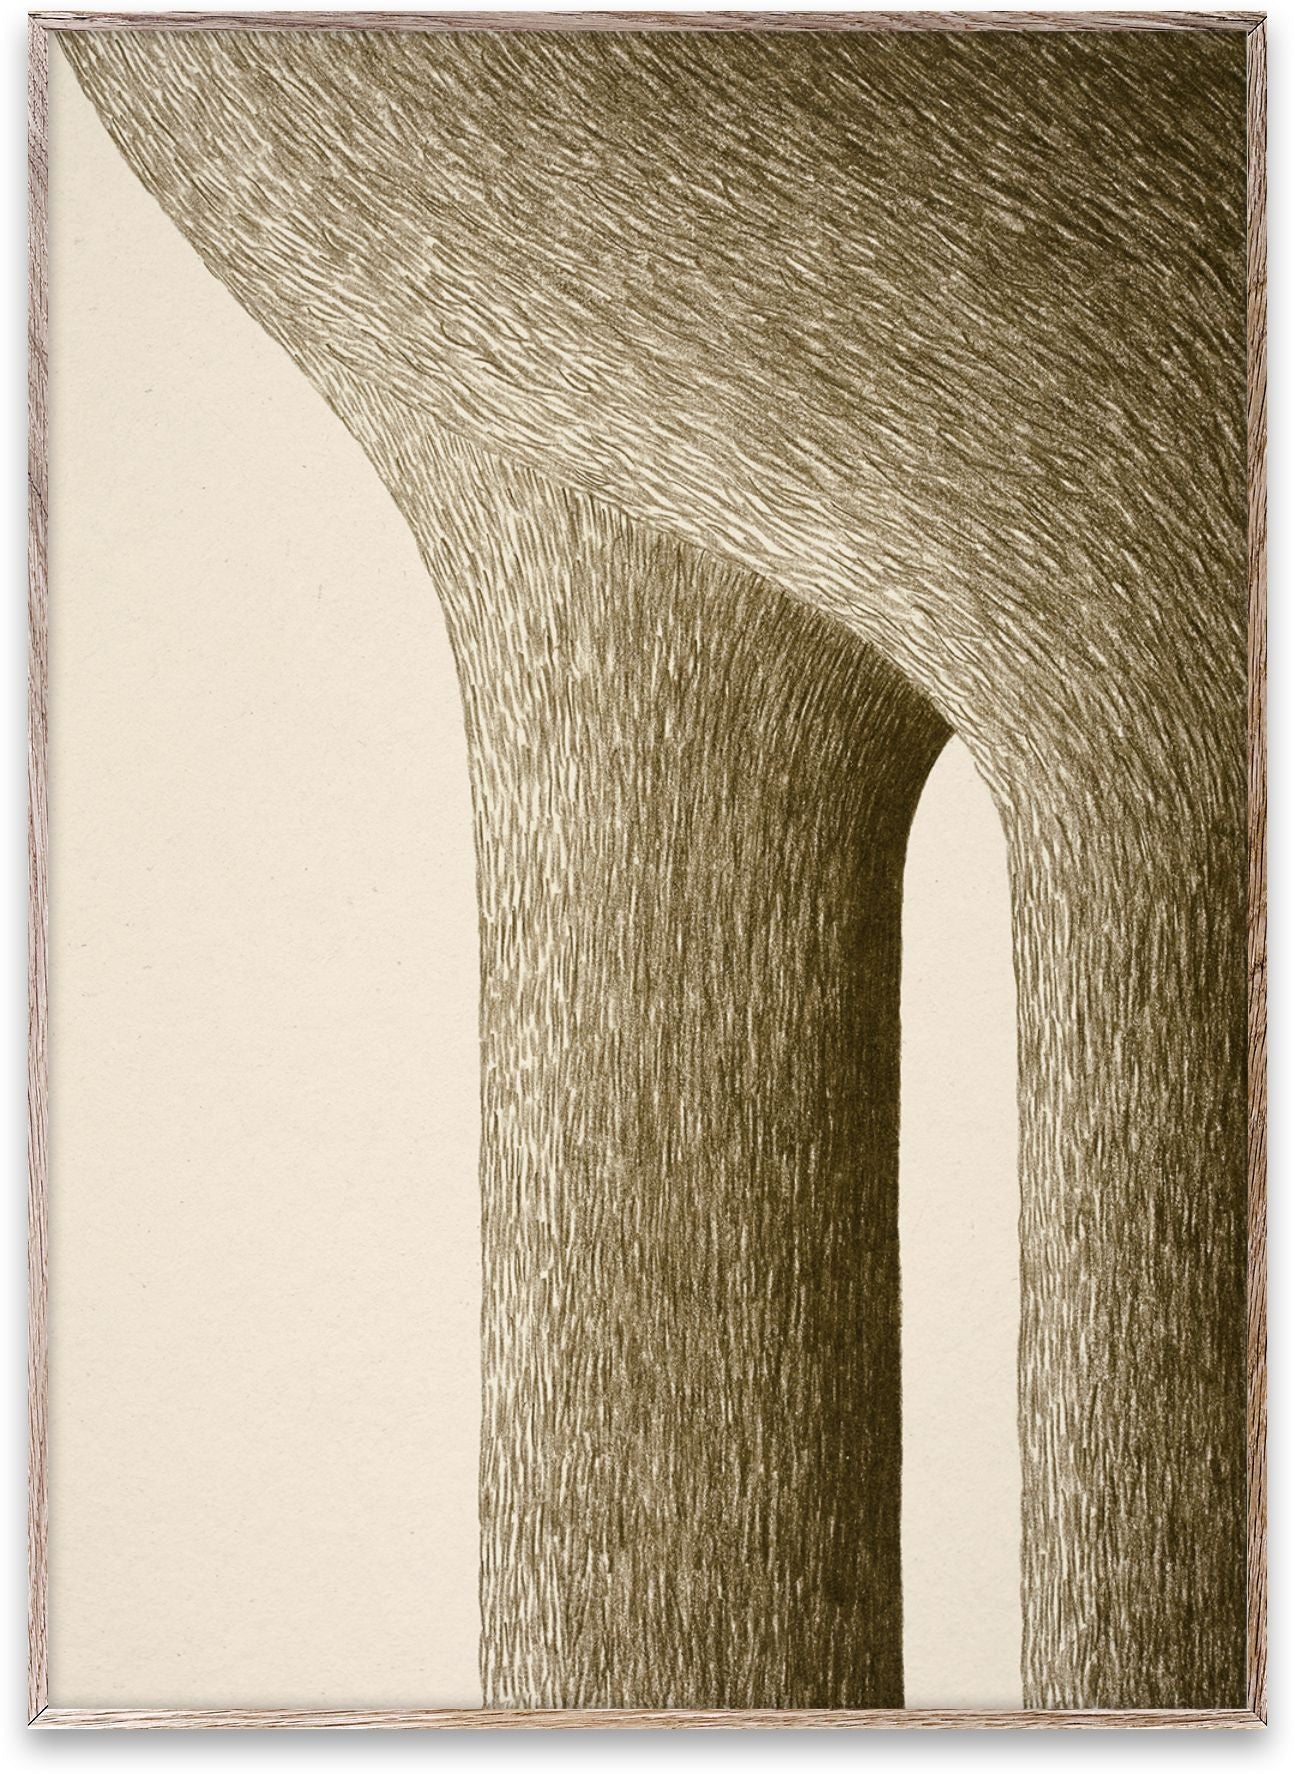 Paper Collective Piliers 03 plakat, 70x100 cm